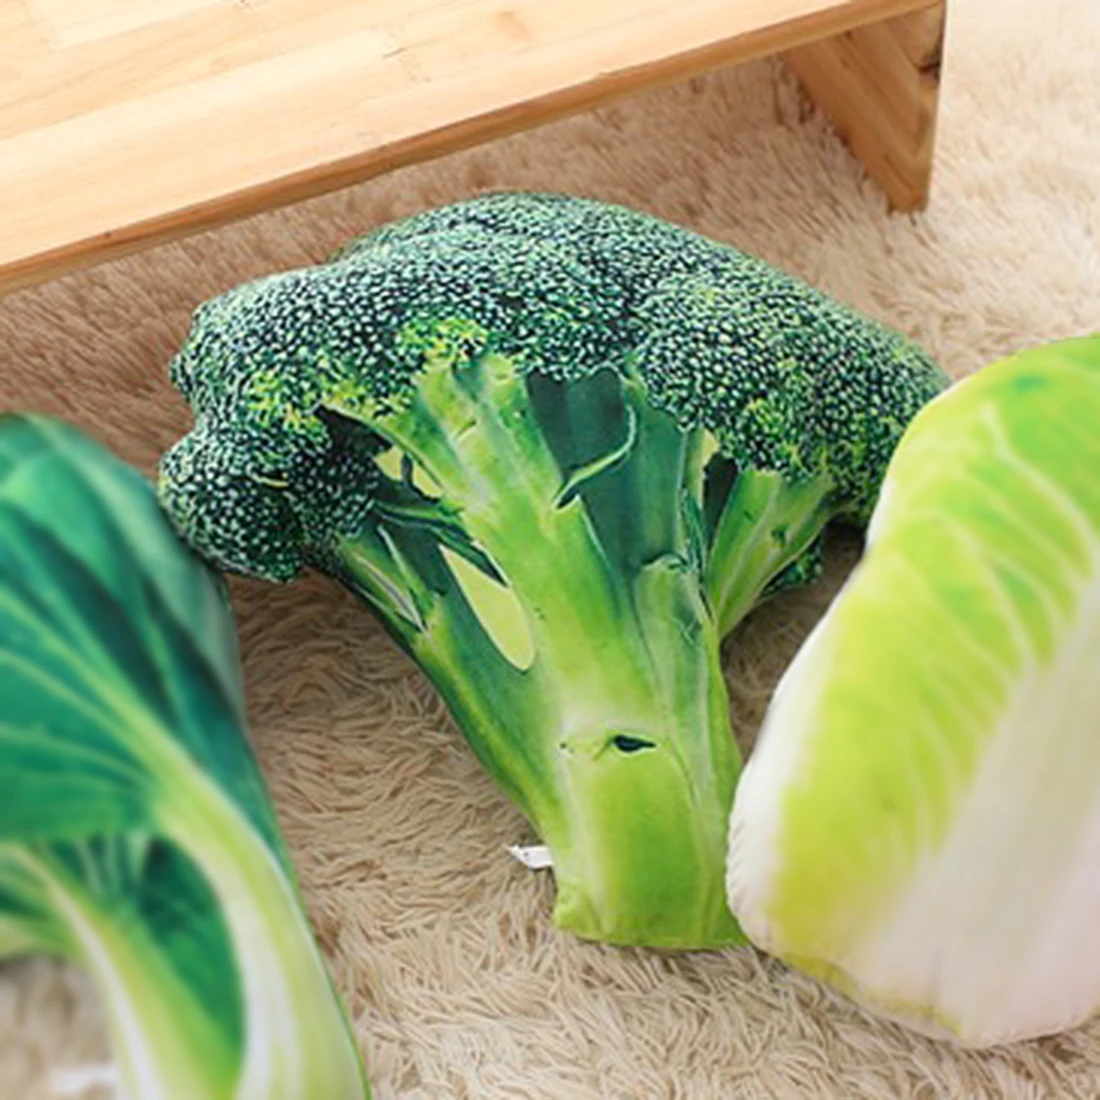 Новейший популярный товар идеи Kawaii игрушки 3D моделирование овощей Подушка «брокколи» офис диван подушка бархат фрукты овощи плюш